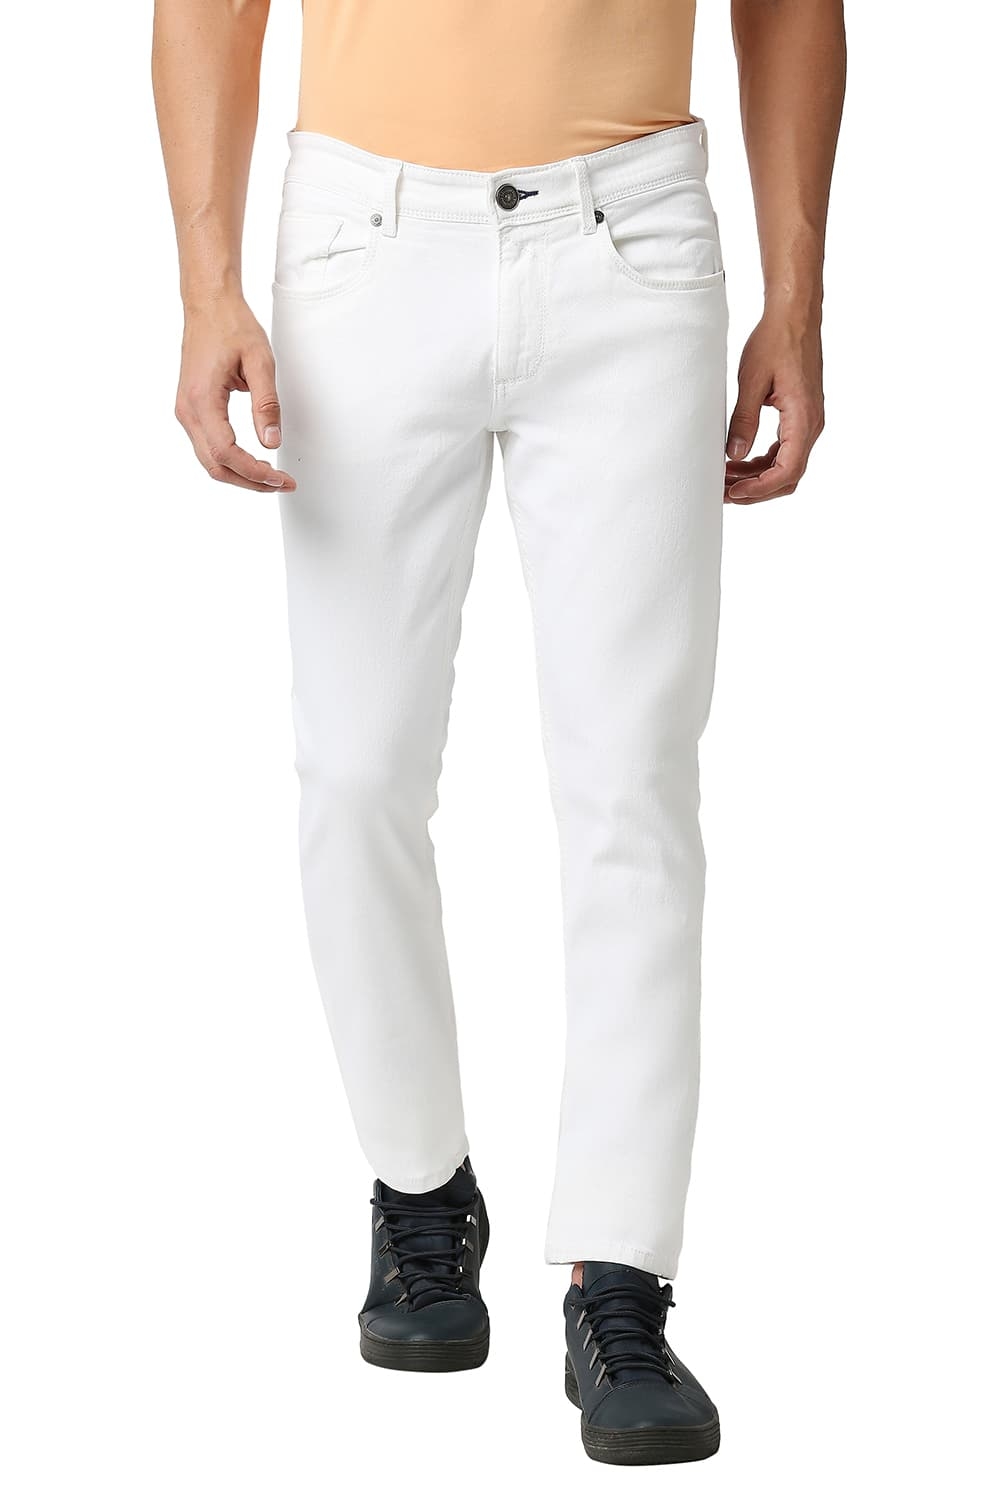 Men's White Cotton Blend Solid Jeans